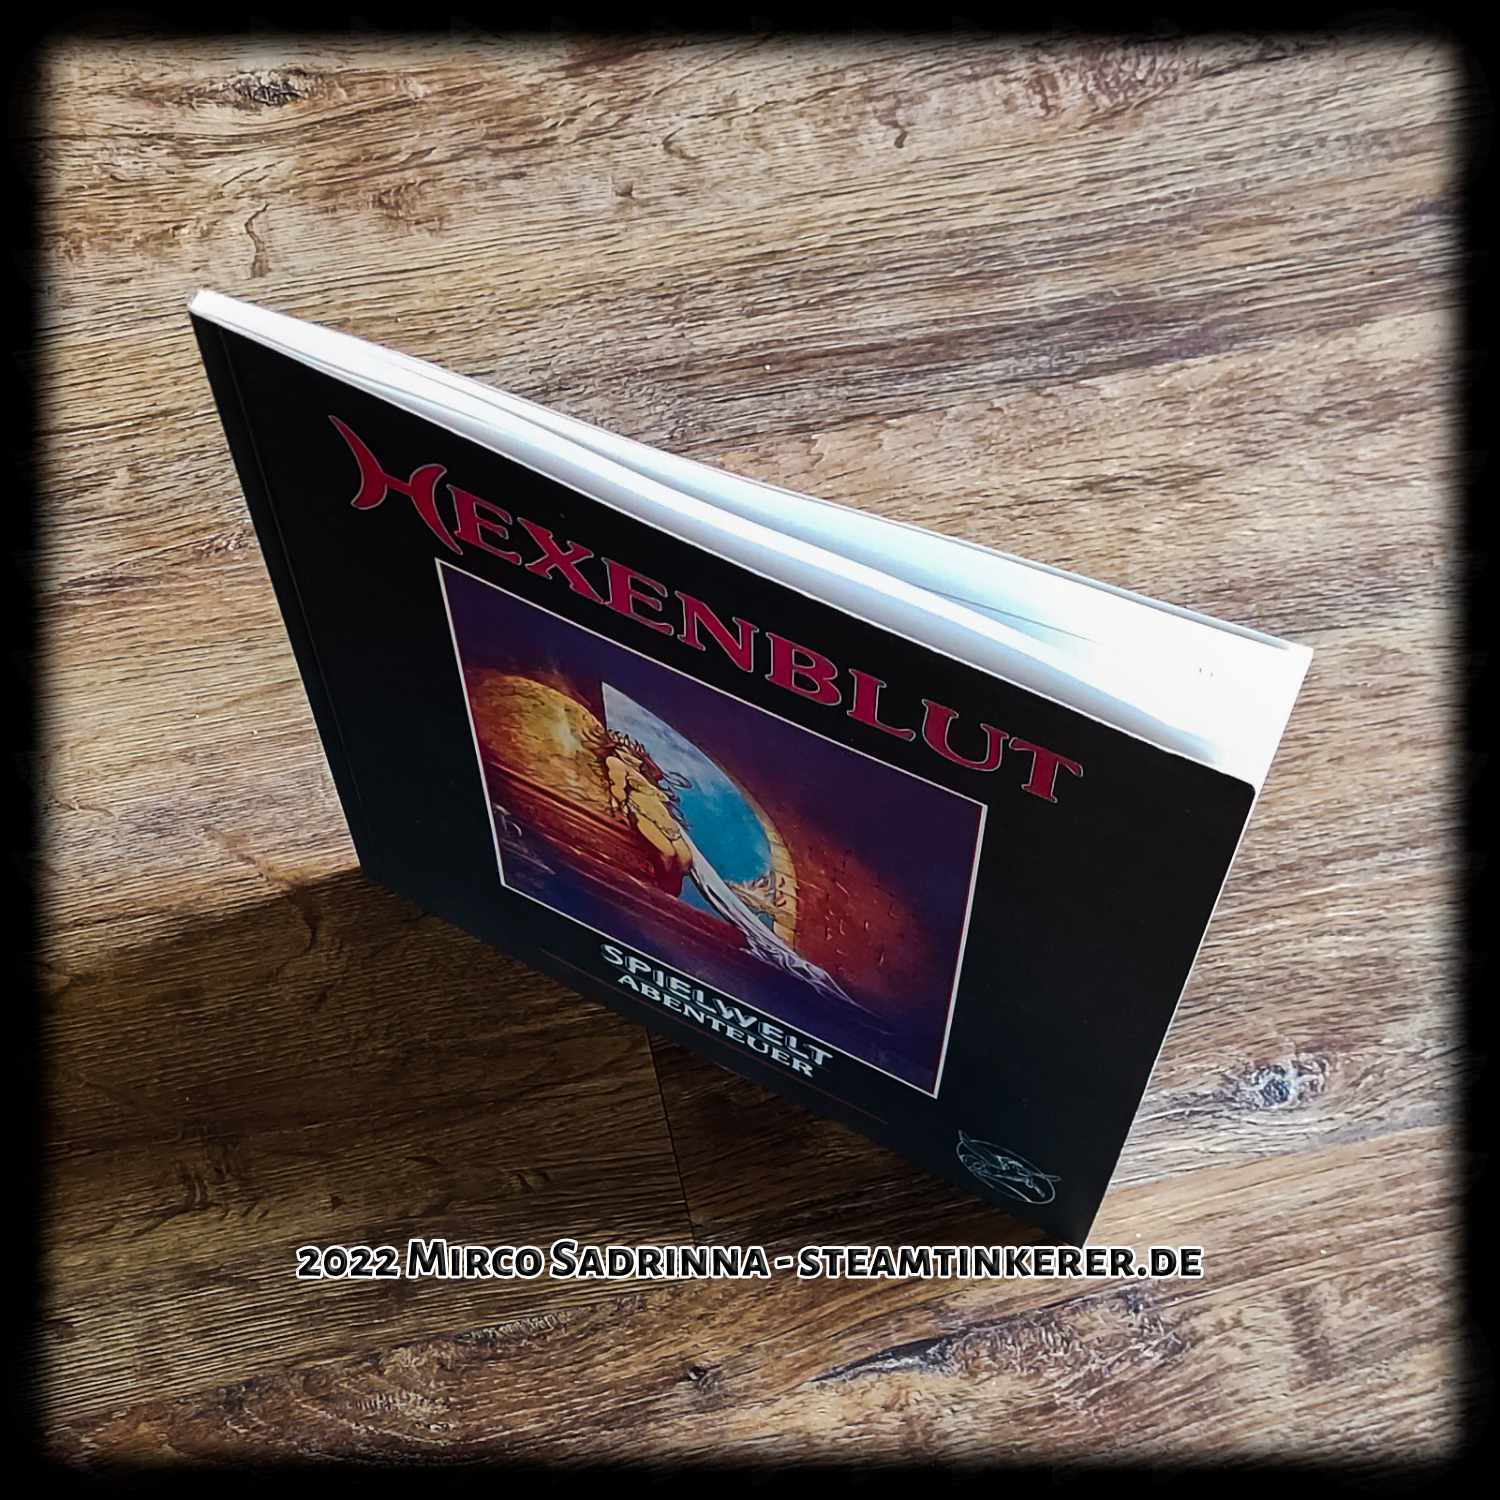 Hexenblut - Ein Spielwelt-Abenteuer aus dem Jahre 1990 vom Verlag für F&SF-Spiele.